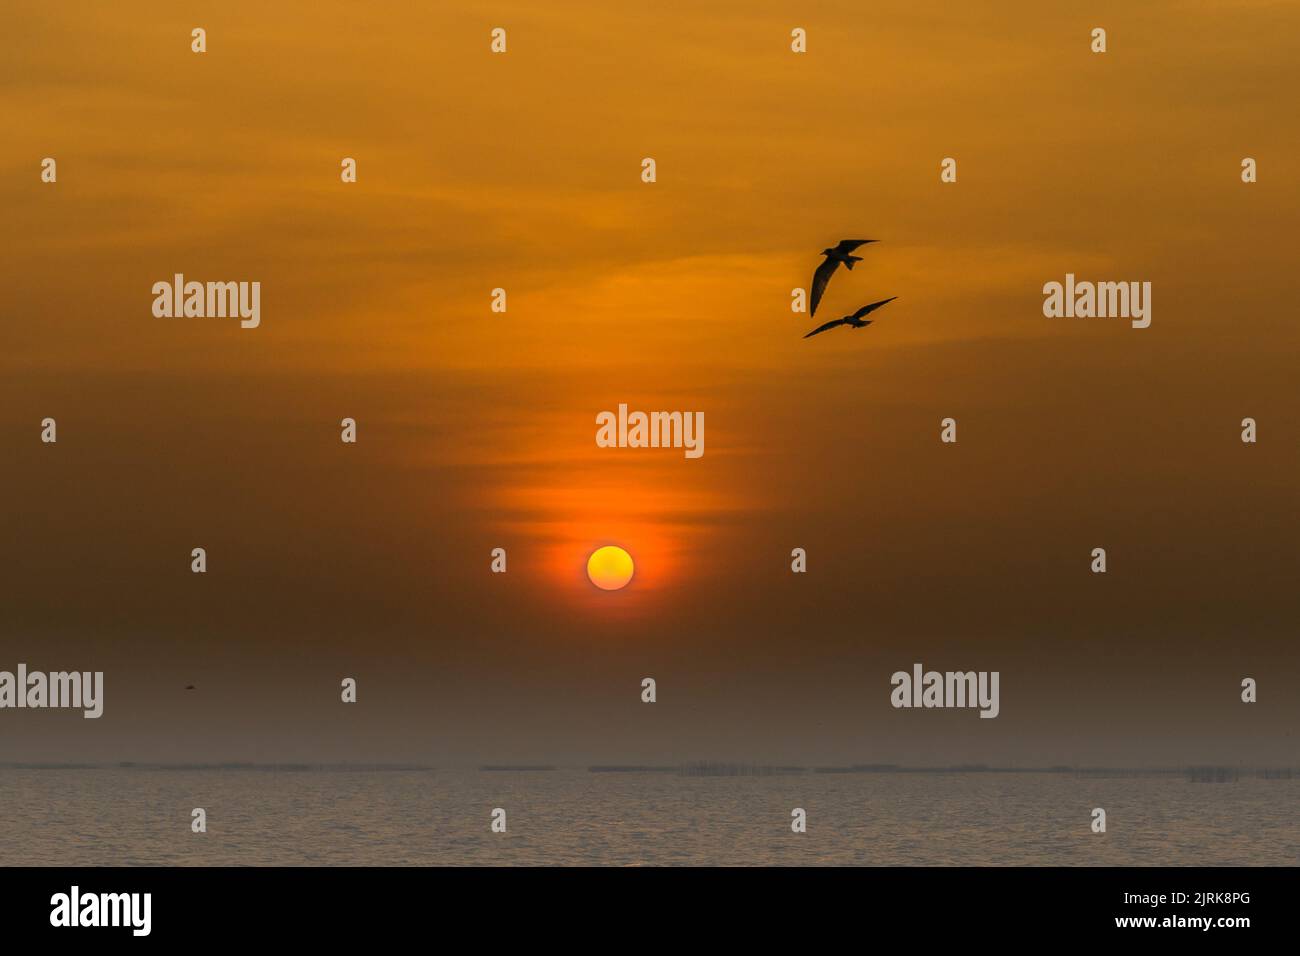 Eine Silhouette von zwei Vögeln in einem orangefarbenen Himmel bei Sonnenuntergang. Stockfoto